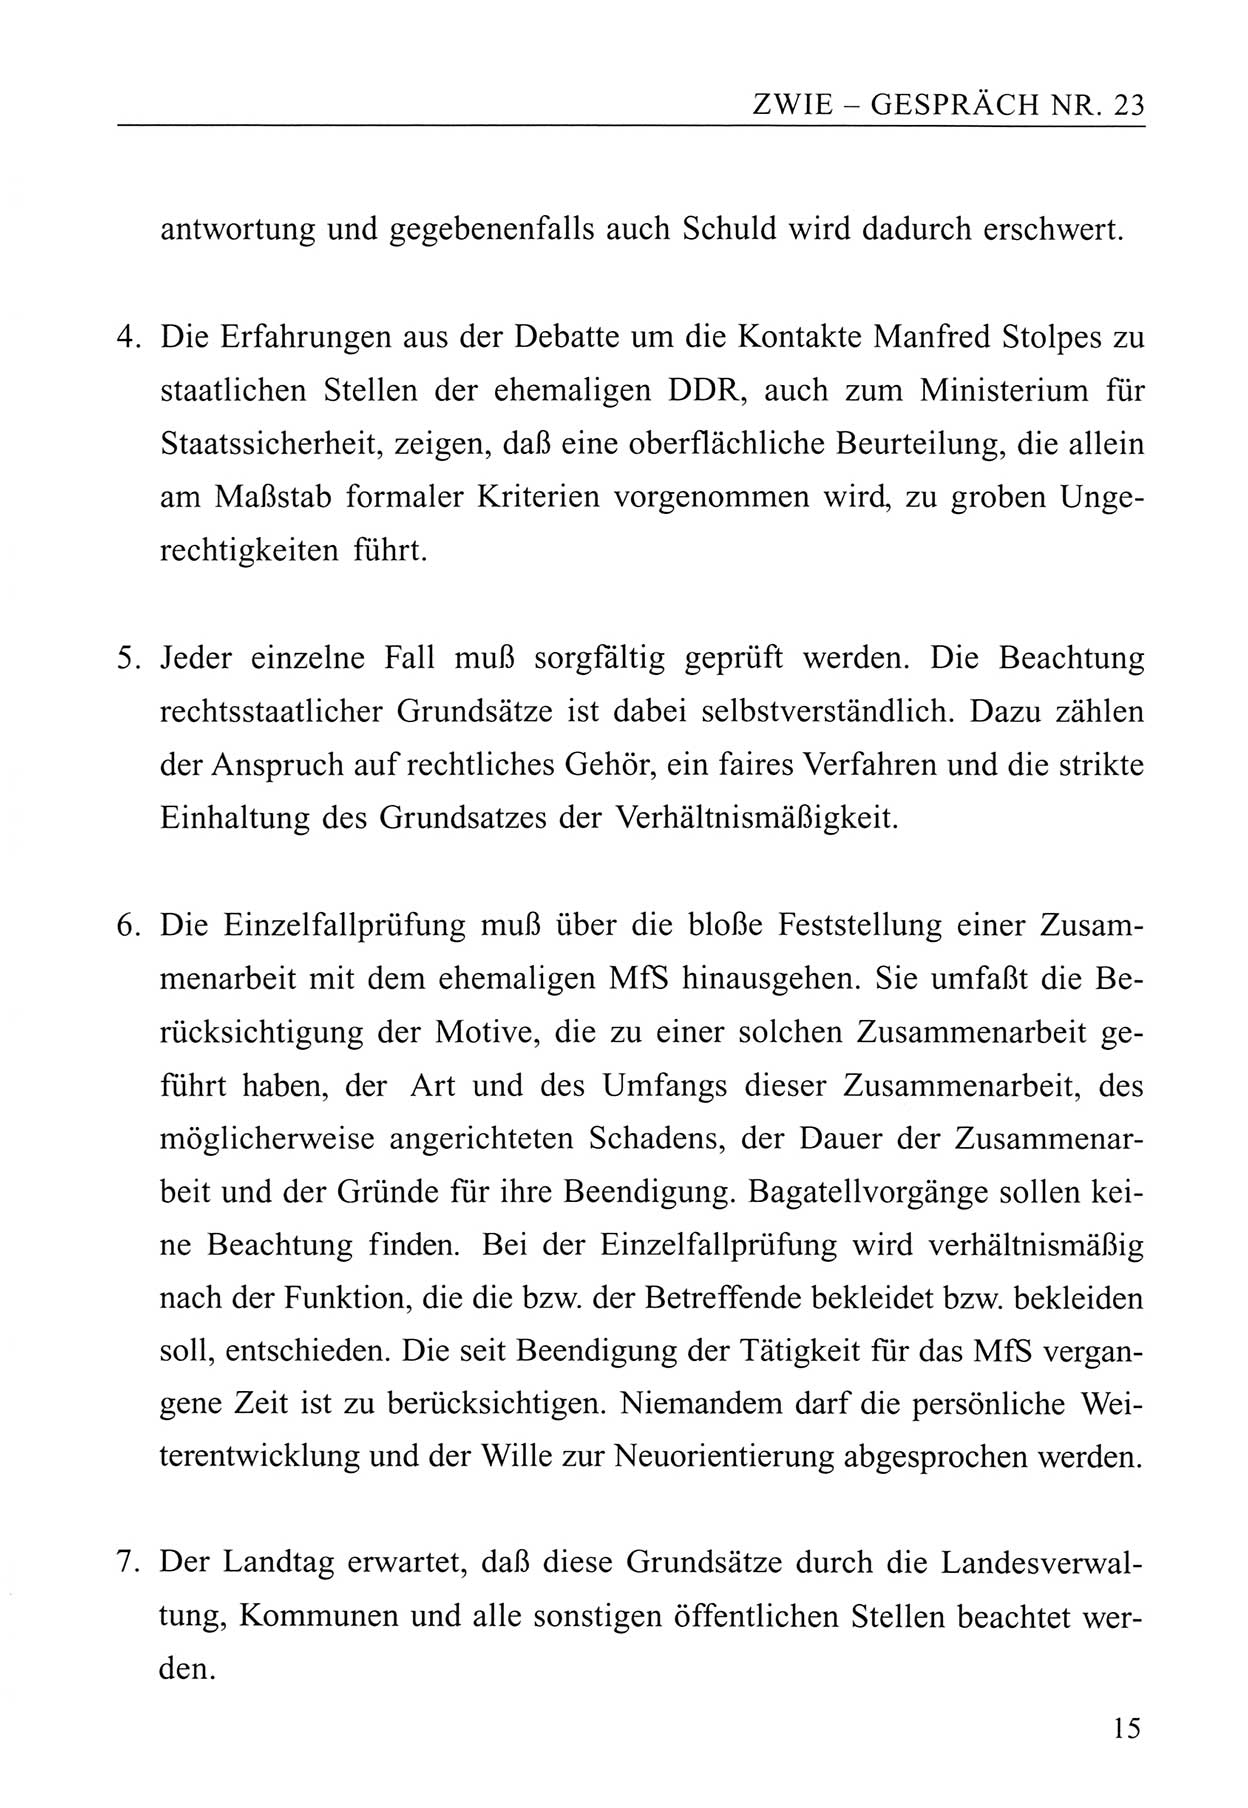 Zwie-Gespräch, Beiträge zum Umgang mit der Staatssicherheits-Vergangenheit [Deutsche Demokratische Republik (DDR)], Ausgabe Nr. 23, Berlin 1994, Seite 15 (Zwie-Gespr. Ausg. 23 1994, S. 15)